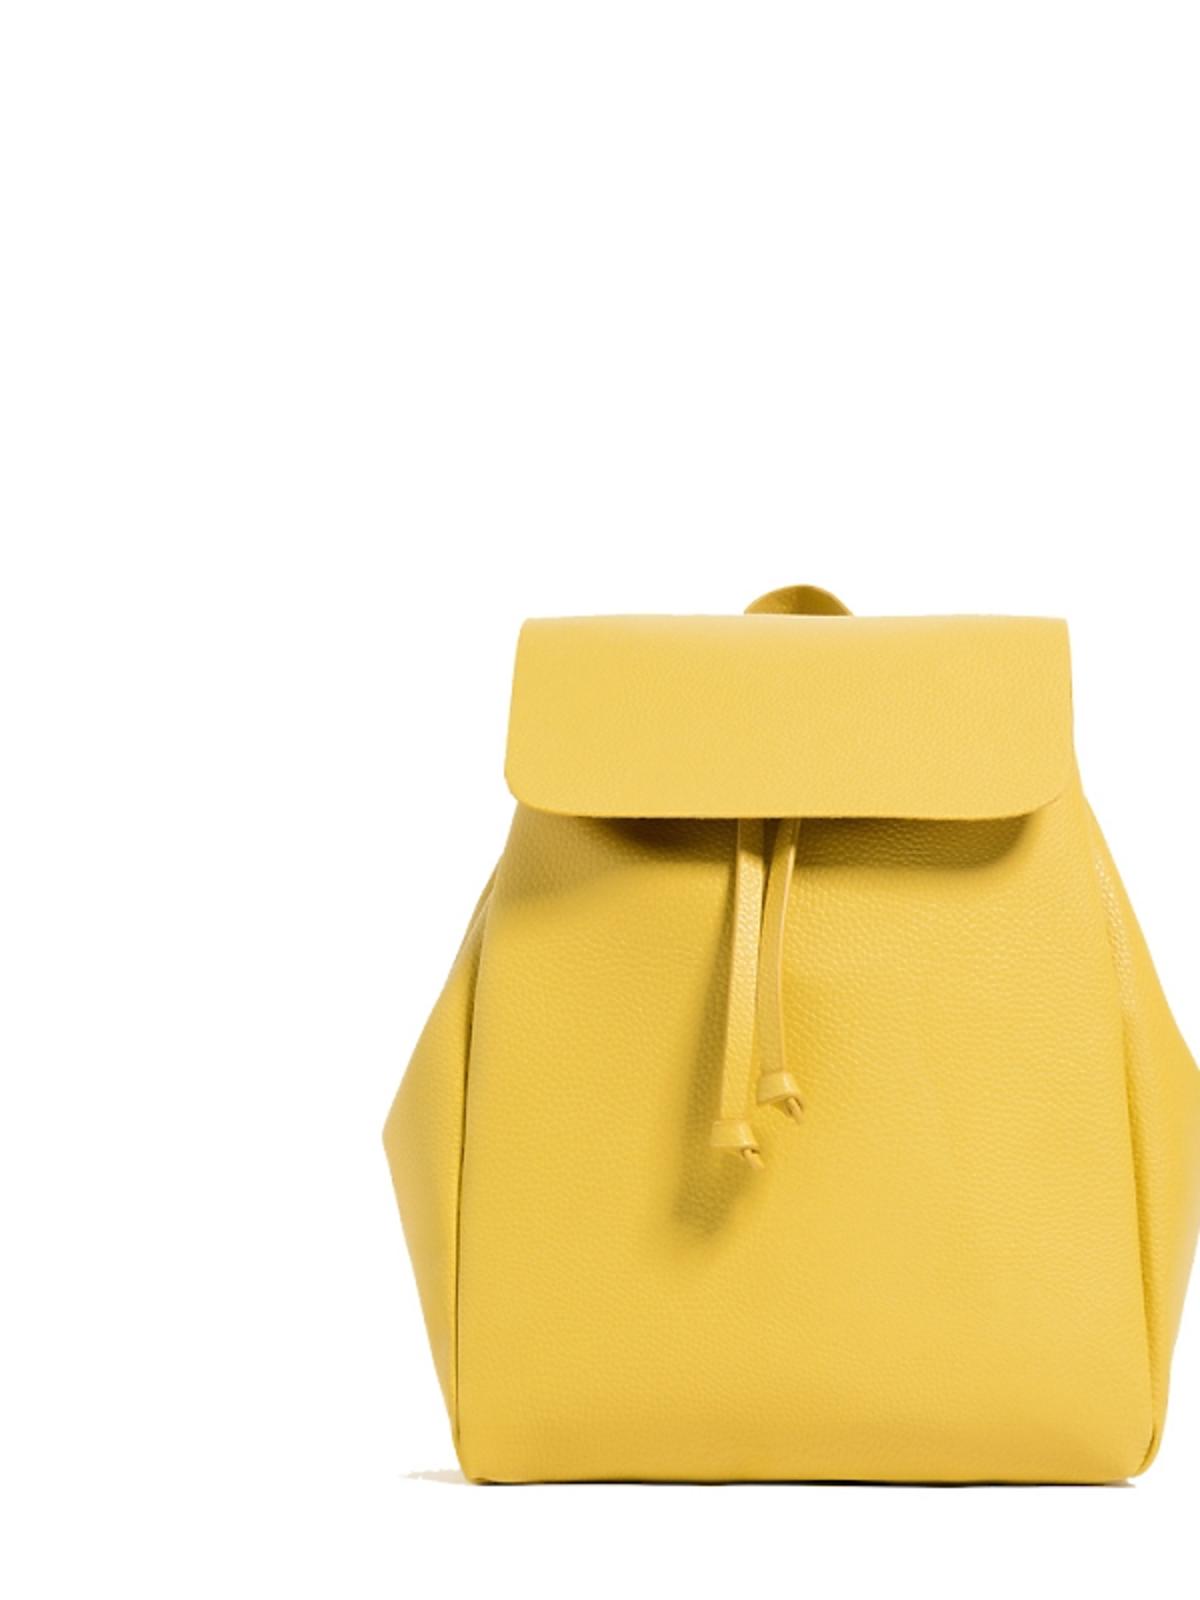 żółty plecak